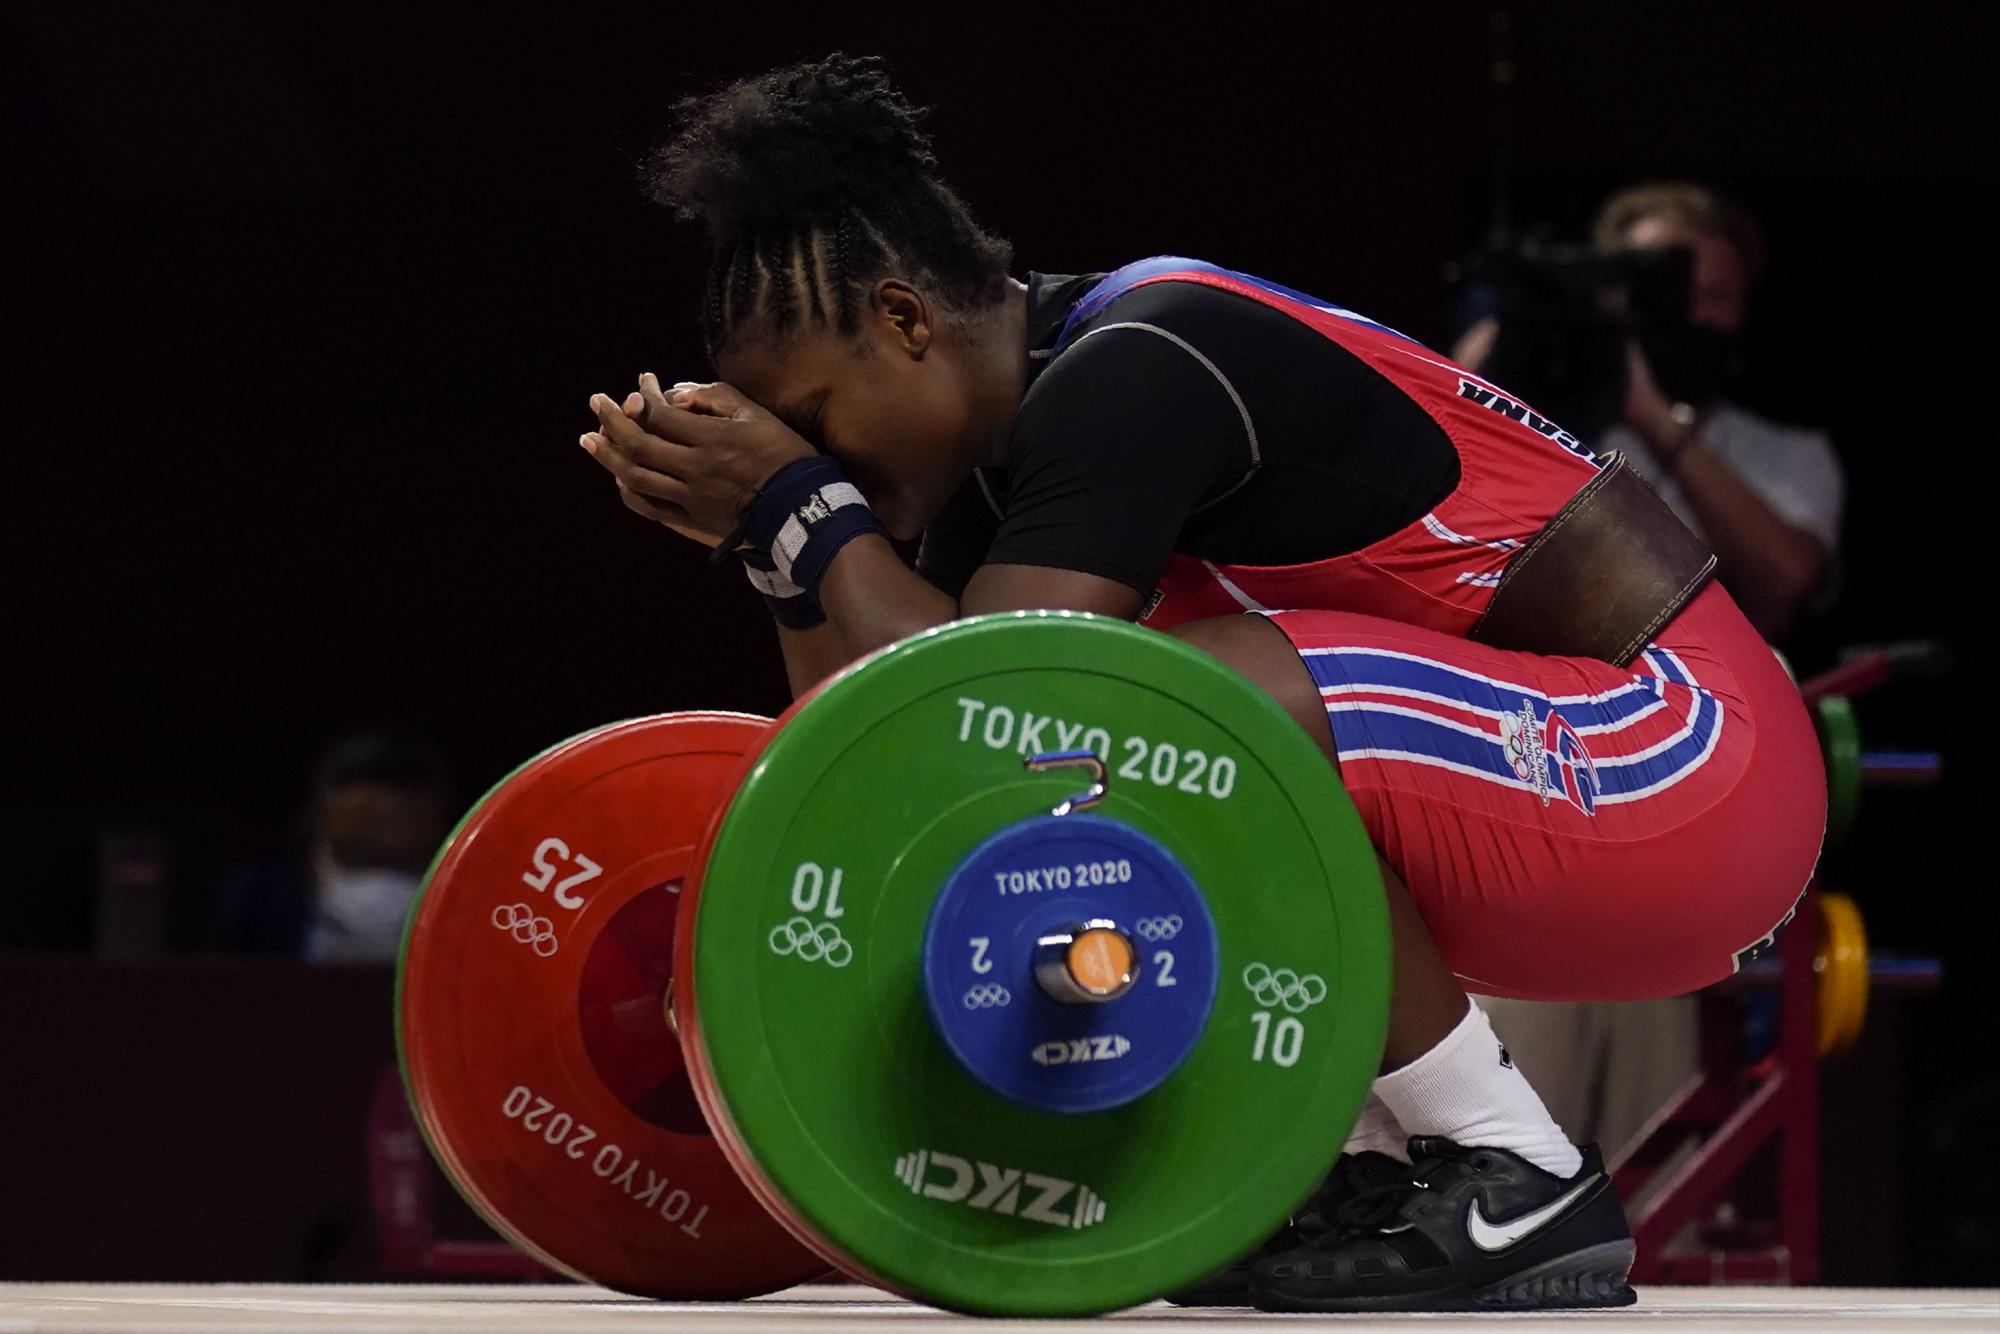 Crismery Dominga Santana Peguero de República Dominicana reacciona después de un levantamiento fallido, en el evento de levantamiento de pesas femenino de 87 kg en los Juegos Olímpicos de Verano de 2020, el lunes 2 de agosto de 2021 en Tokio, Japón. (Foto AP / Seth Wenig)